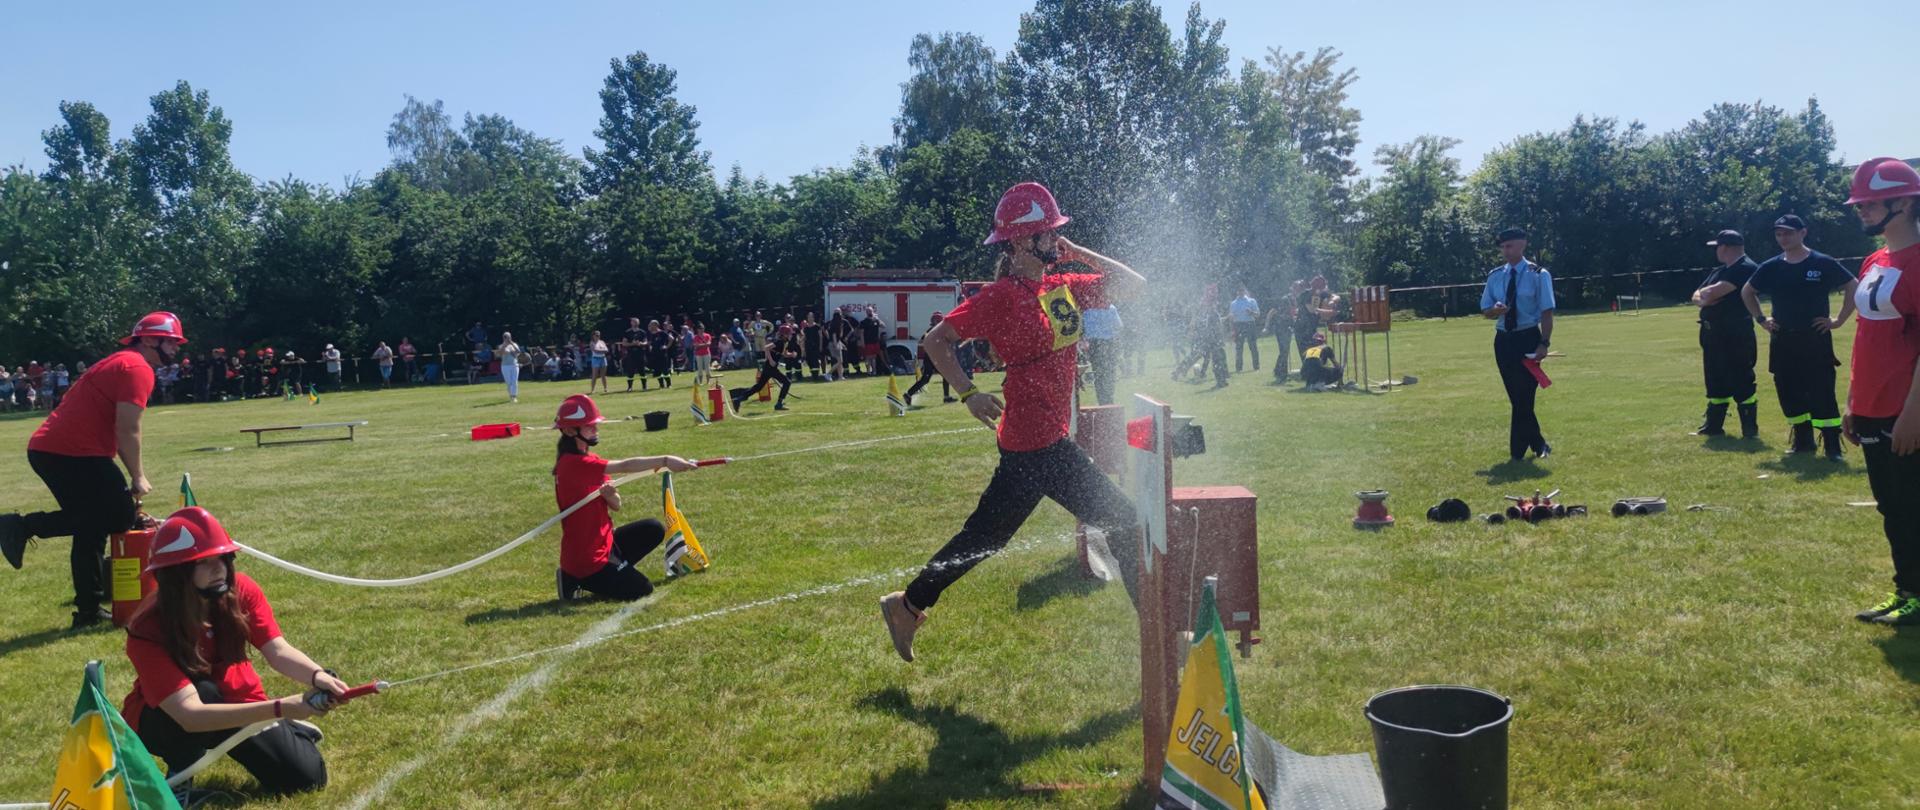 na zdjęciu widać młodych strażaków OSP podczas kolejnej konkurencji zawodów - przy użyciu hydronetek leją wodę do tarcz z nalewakami.